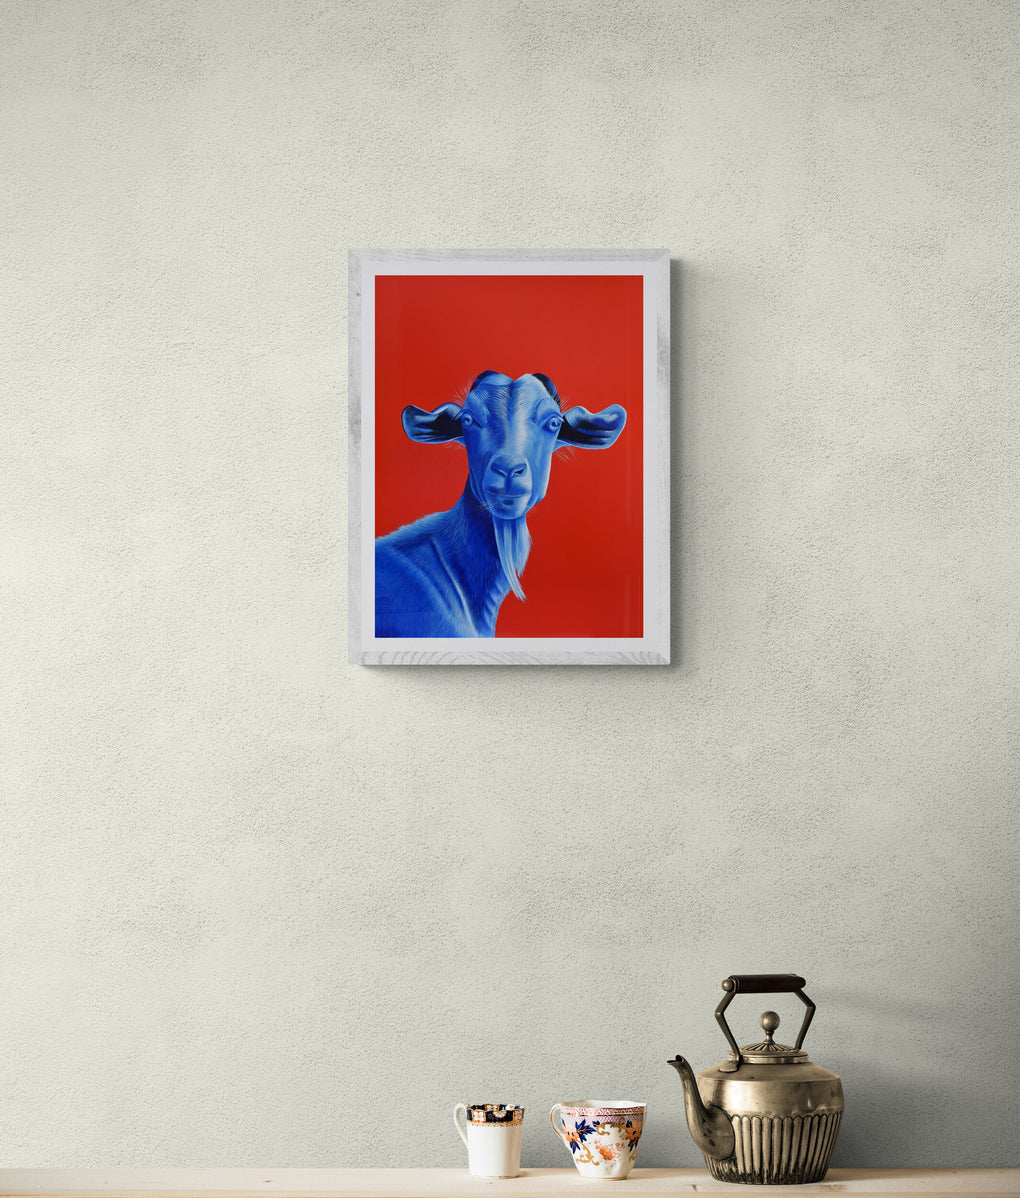 Blue NZ Goat